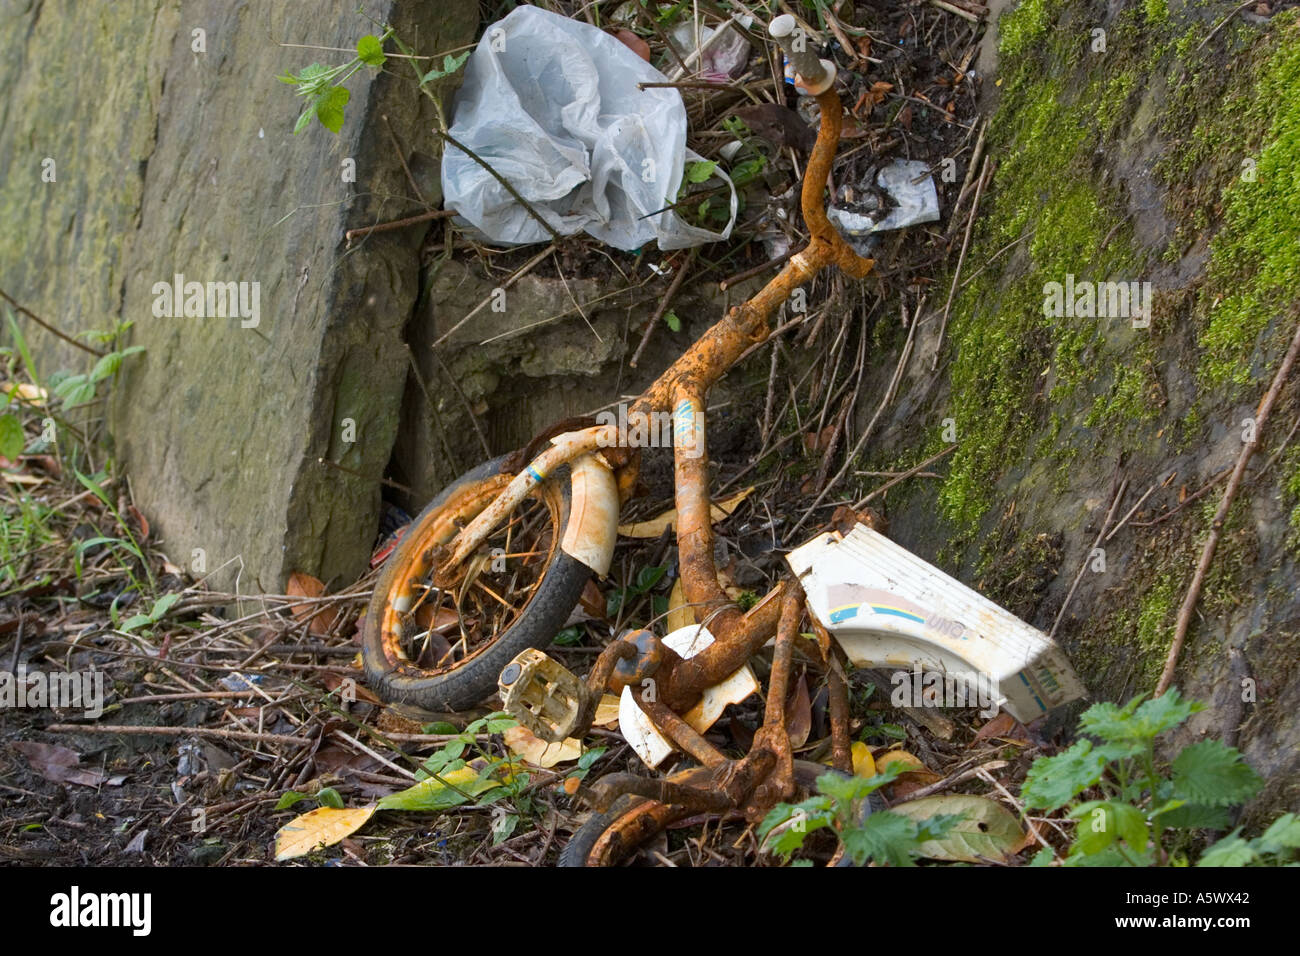 Verrostetes Fahrrad und Plastiktüte auf dem Kanal-Treidelpfad weggeworfen In radcliffe Bury lancashire uk Stockfoto